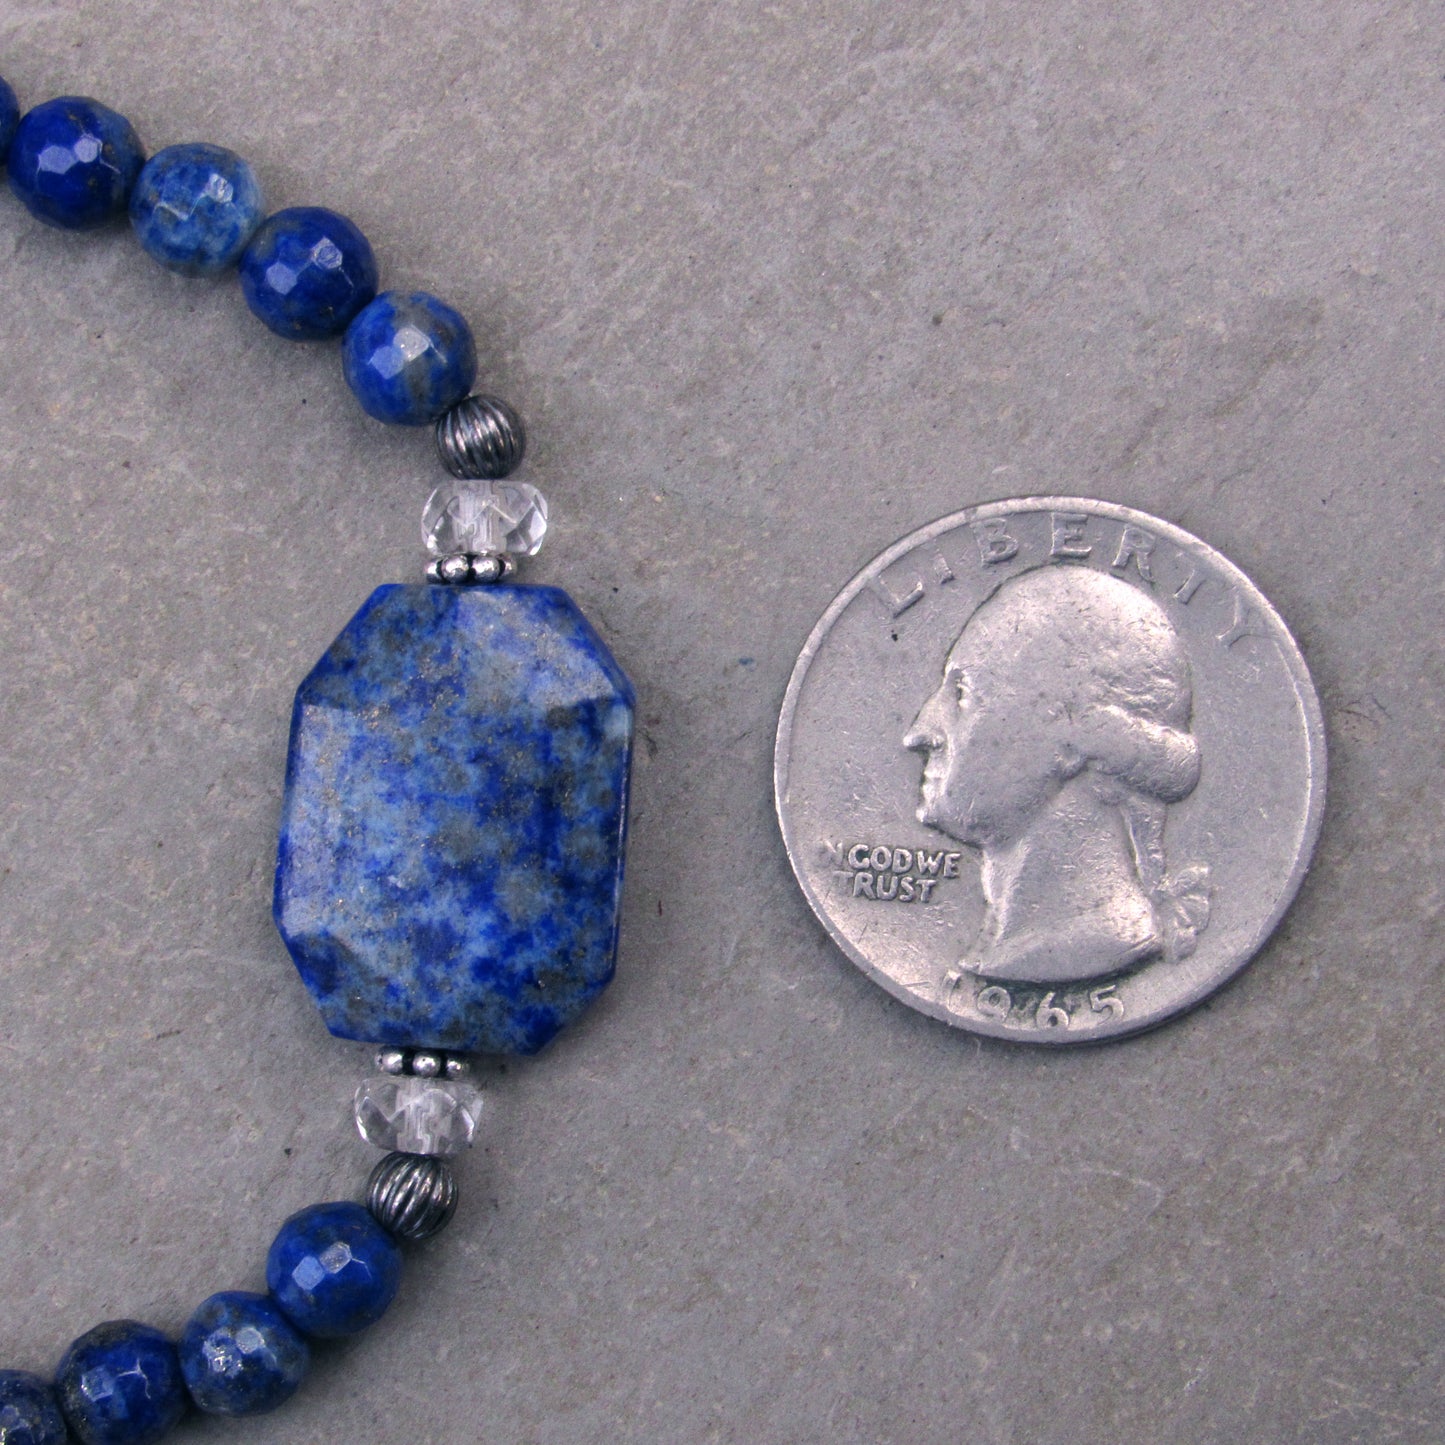 Lapis Lazuli gemstone, Clear Quartz, and Oxidized Sterling Silver Stretch Bracelet